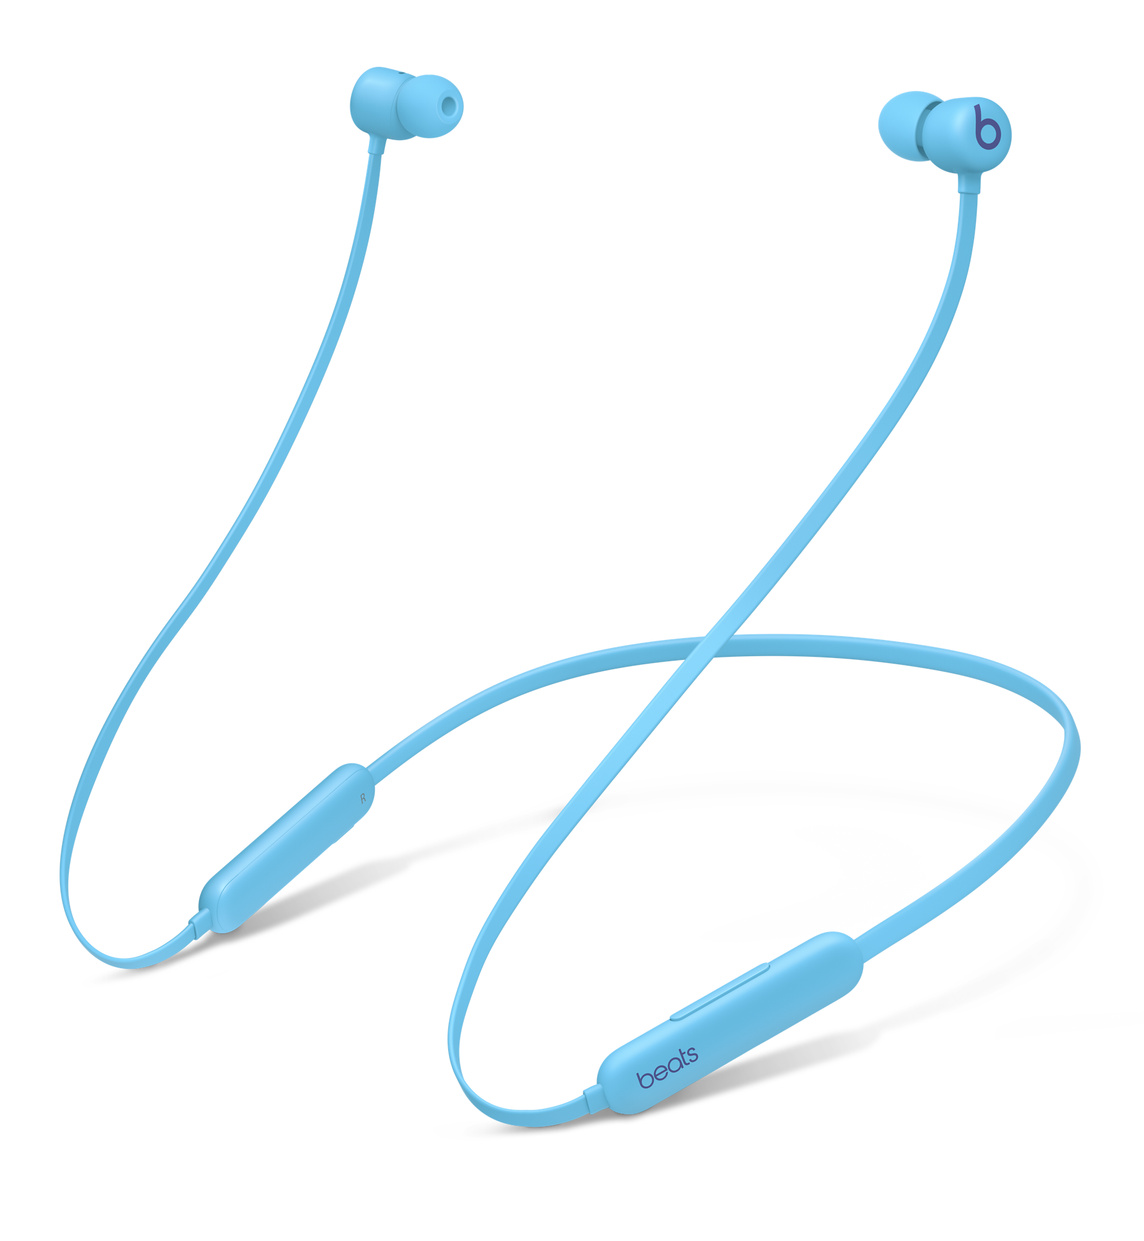 Beats Flex, bezprzewodowe słuchawki douszne zapewniające komfort użytkowania przez cały dzień, w kolorze płomiennie niebieskim, mają dwukomorową strukturę akustyczną, dzięki której zapewniają doskonałą separację kanałów stereo oraz bogate i precyzyjne brzmienie basów.